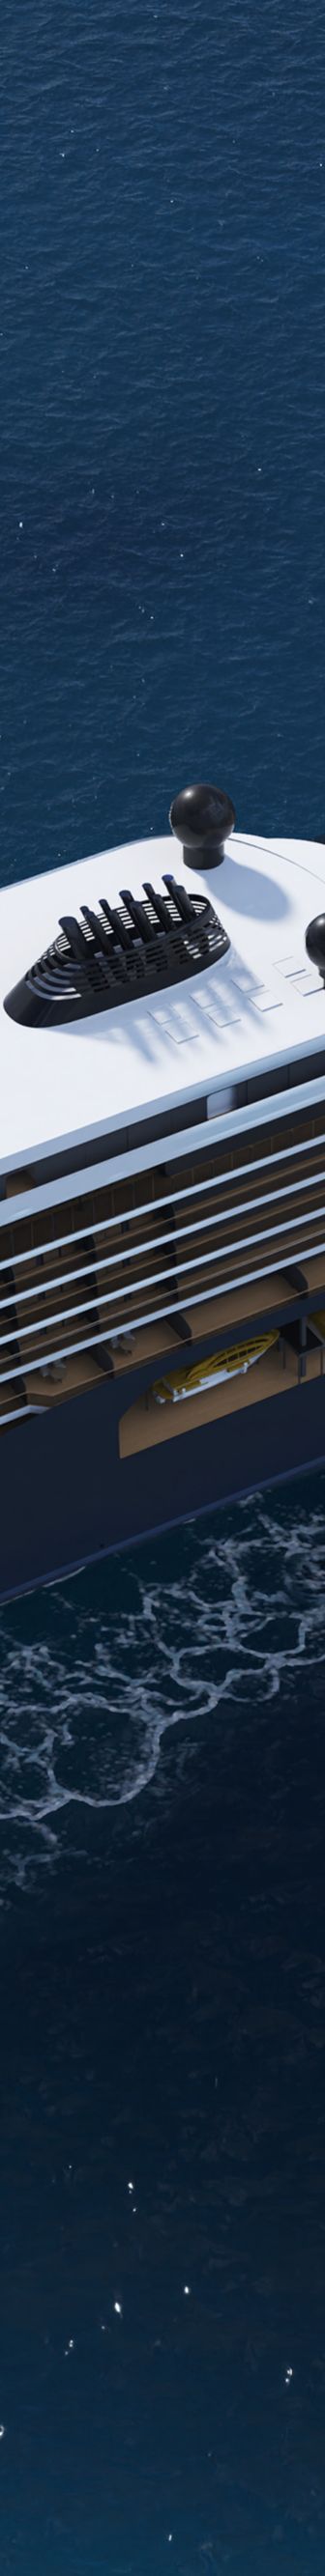 Aerial rendering of yacht